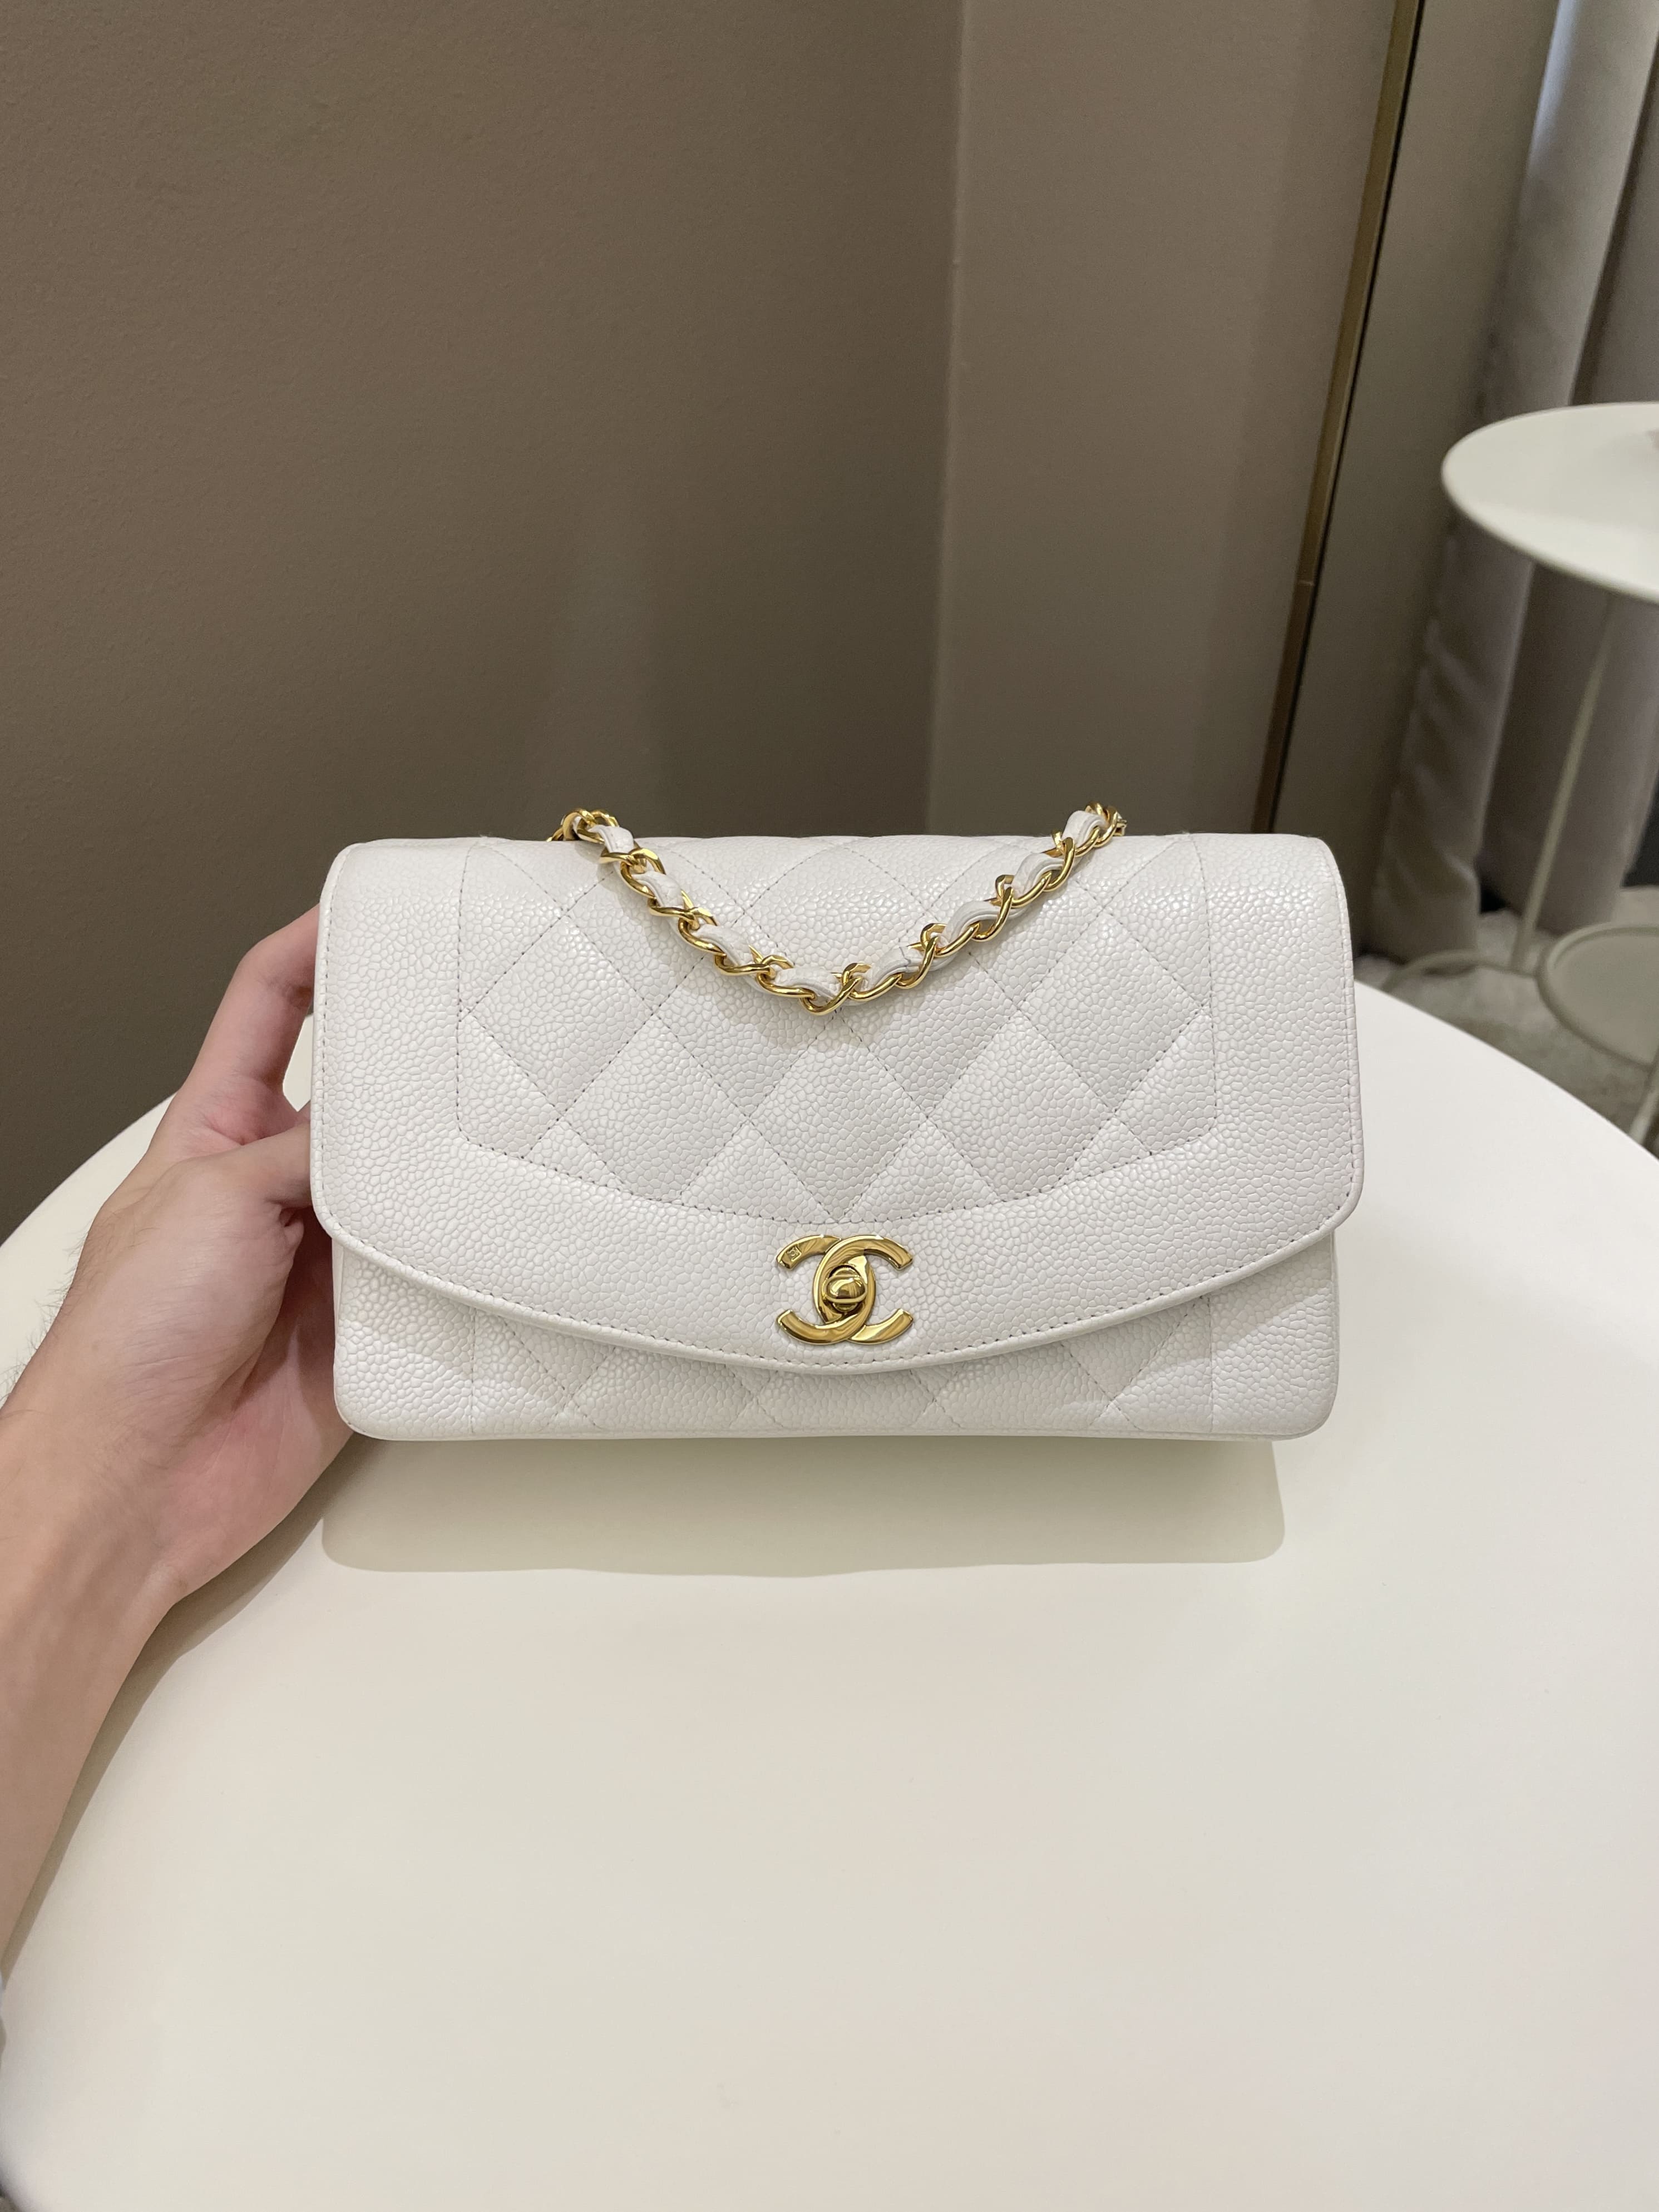 Used Chanel Diana Handbags - Joli Closet